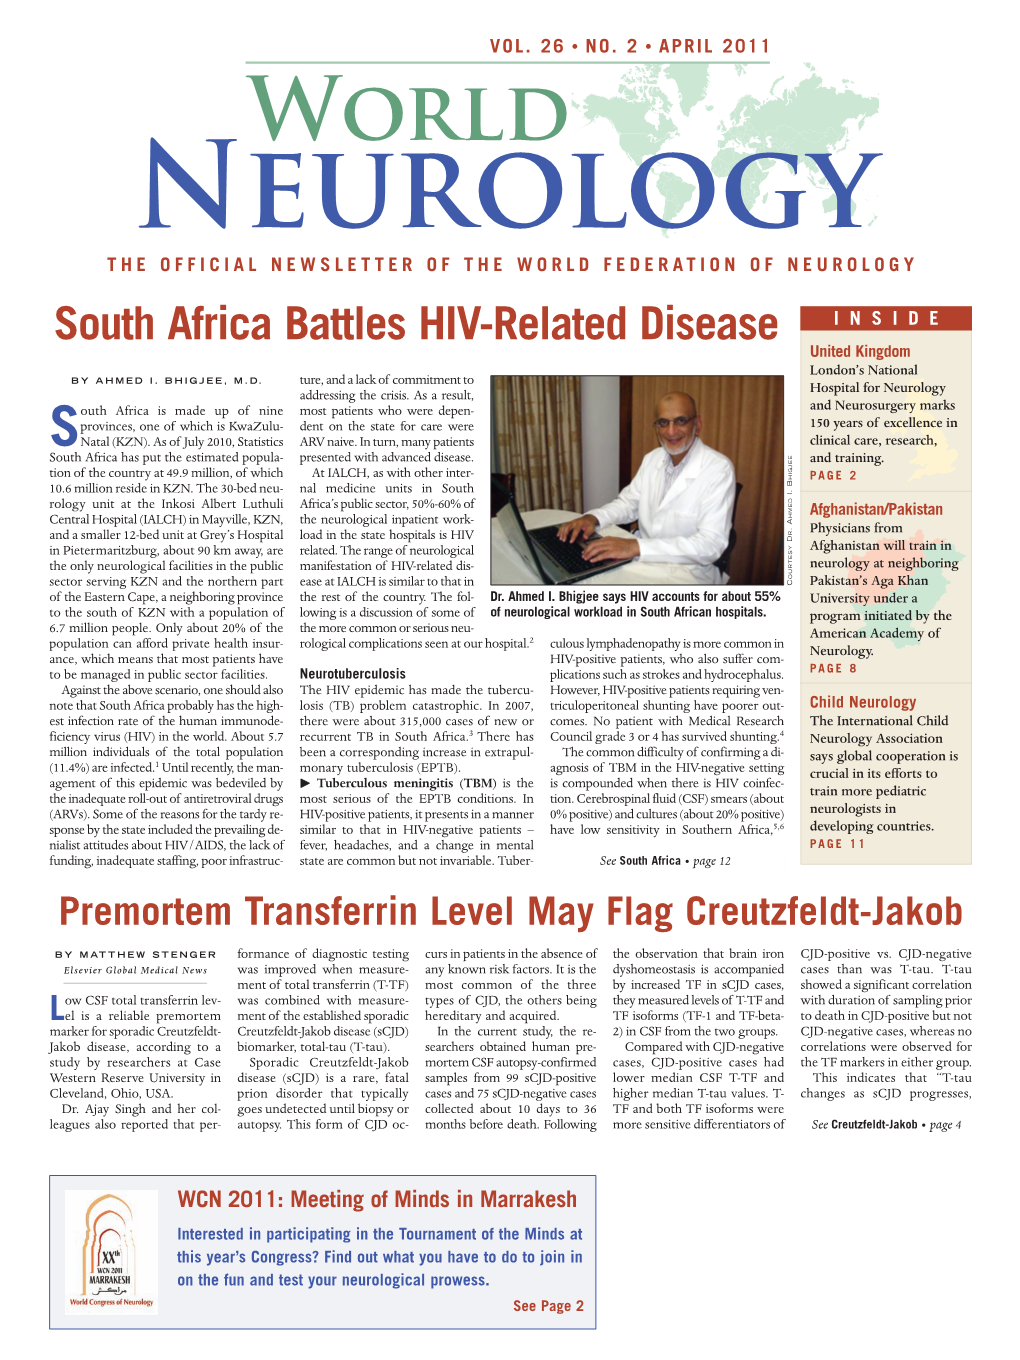 APRIL 2011 World Neurology